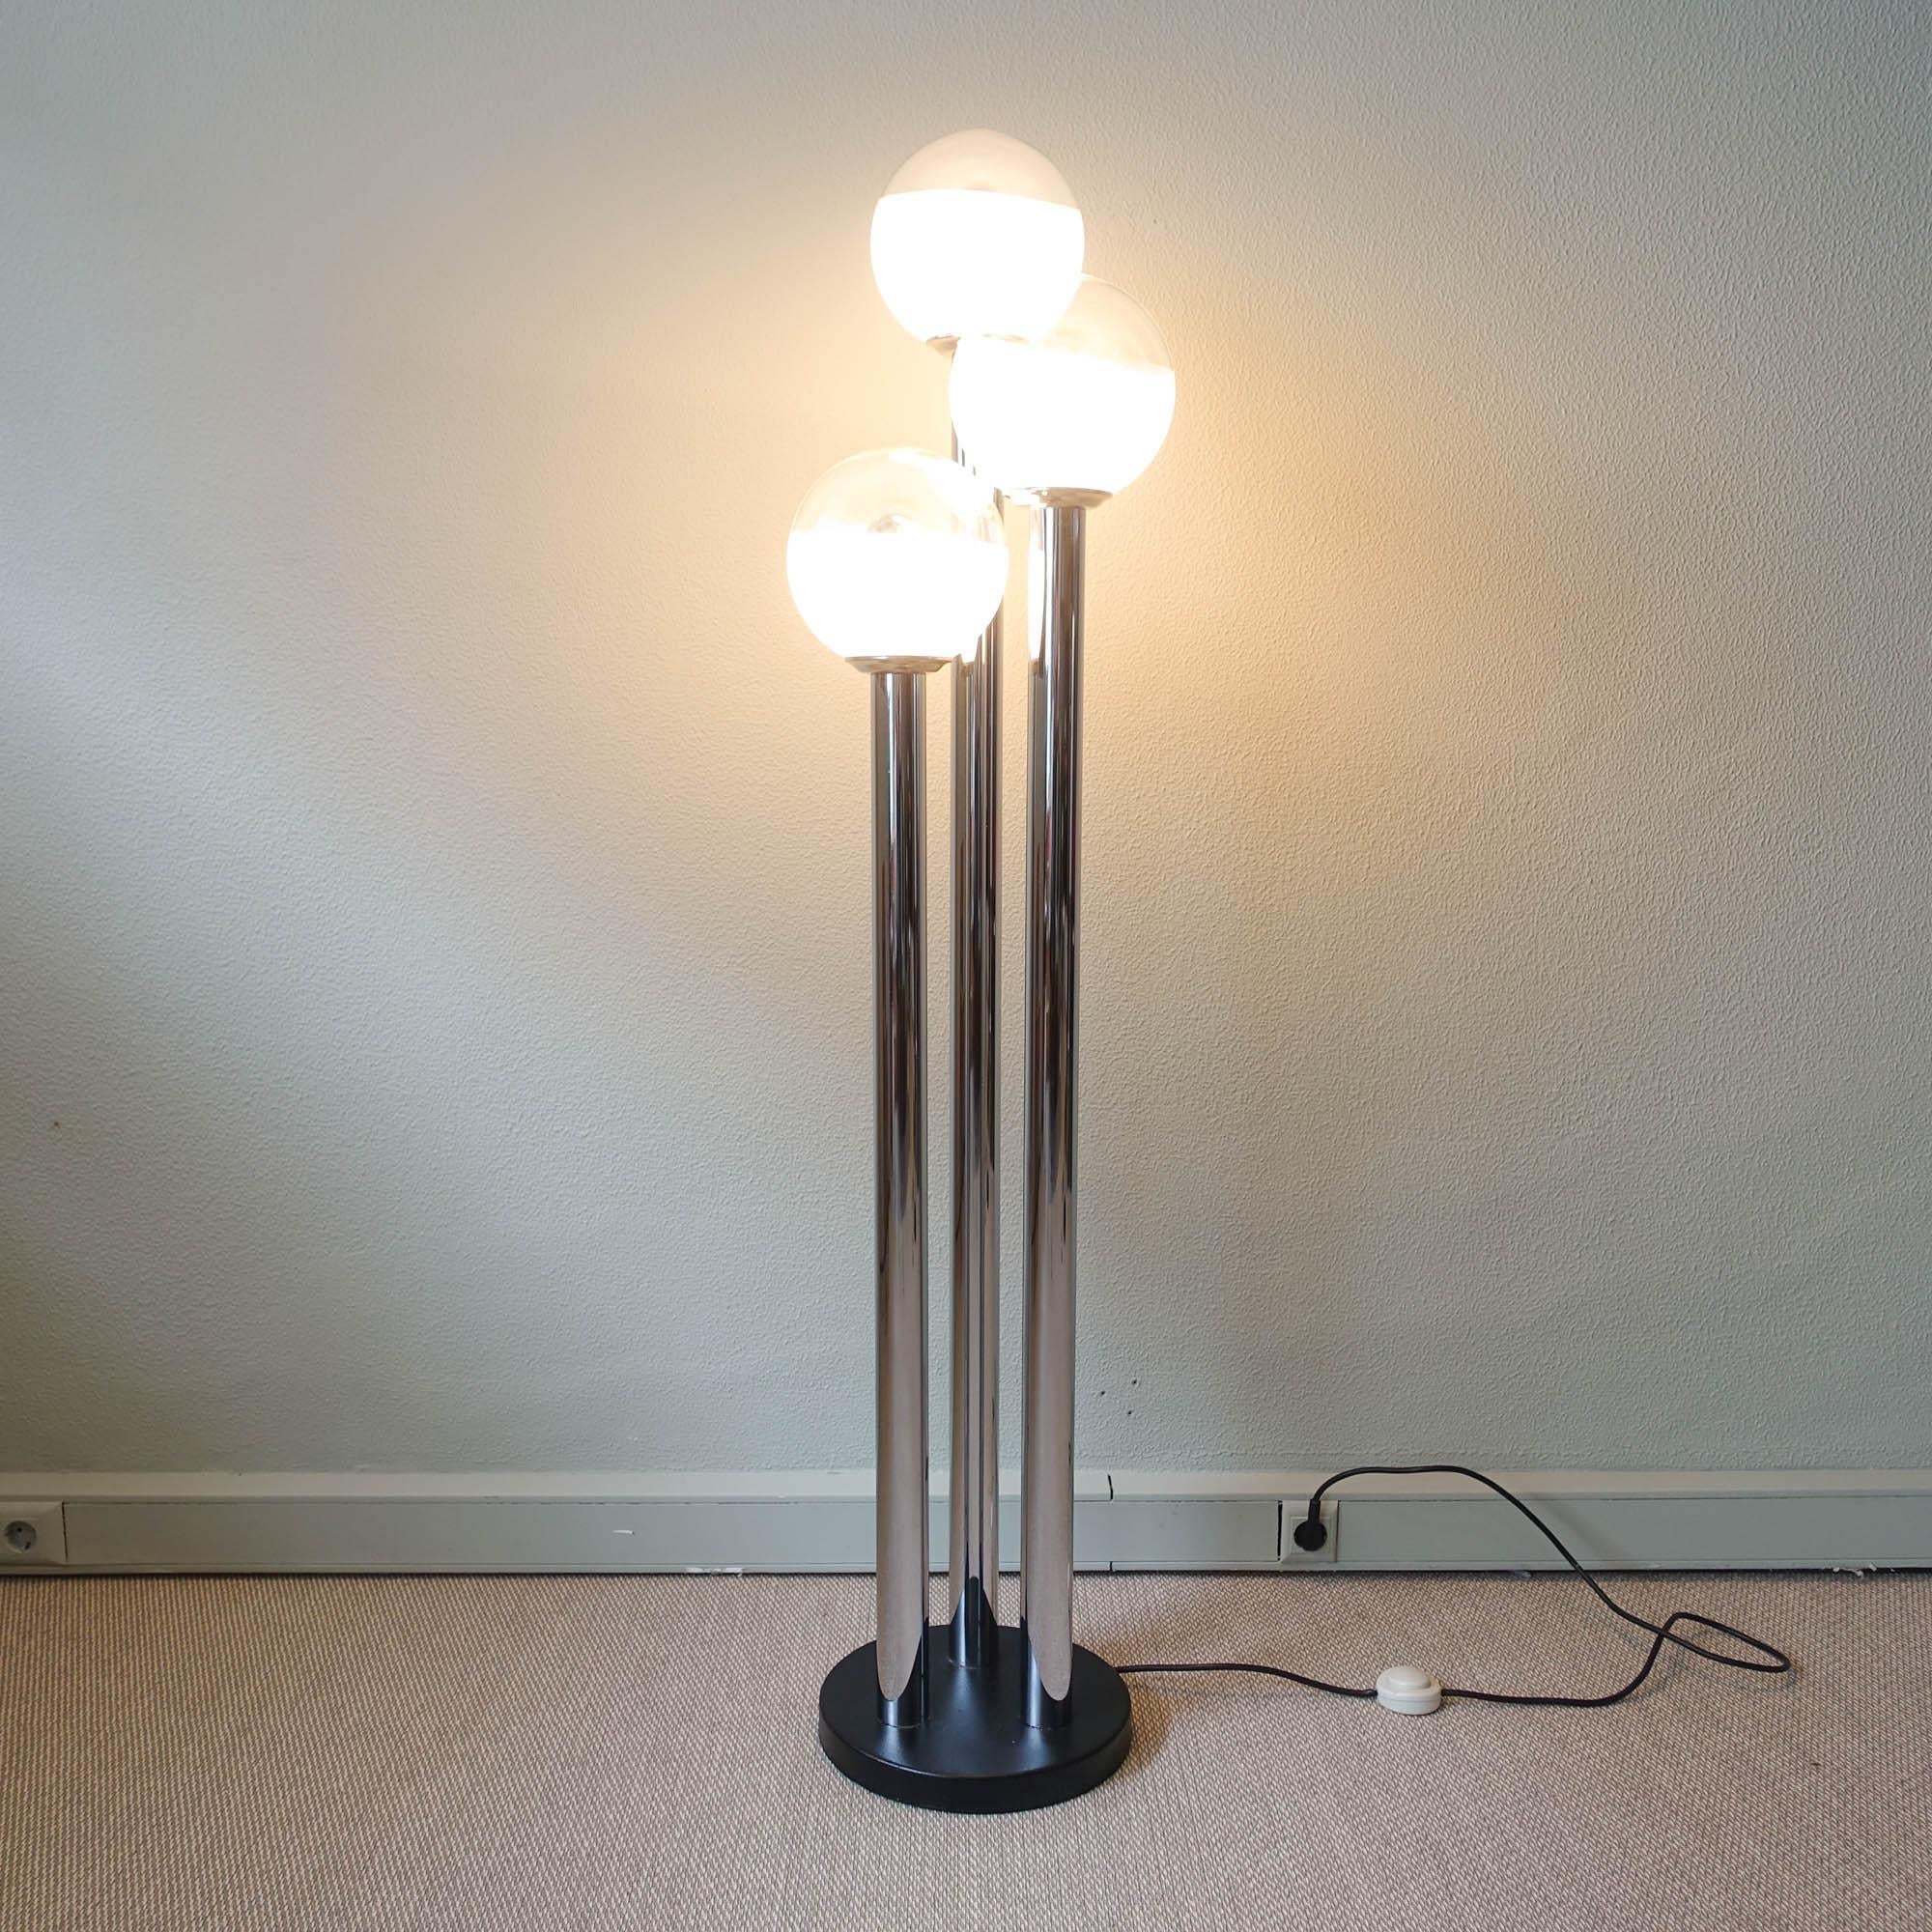 Ce lampadaire a été conçu et produit par Marinha Grande, au Portugal, dans les années 1970. Il présente trois structures tubulaires chromées où sont disposés 3 globes en verre soufflé opalin et transparent.
Le verre est coloré, du lait au